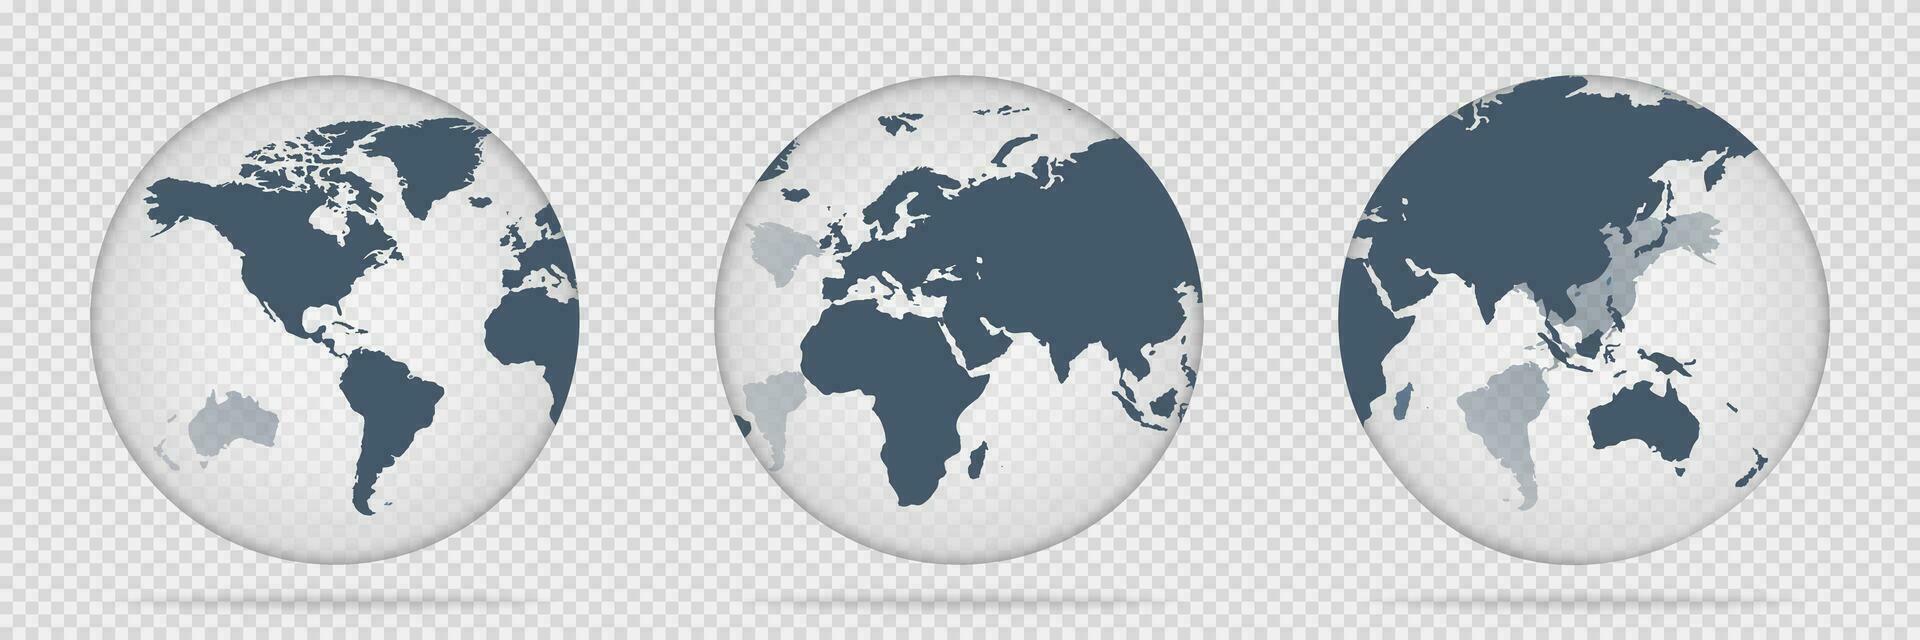 transparente globo icono. vaso mapa de mundo. planeta vector en 3d. transparente esfera forma con continentes realista tierra símbolo con sombra. en todo el mundo concepto. eps 10